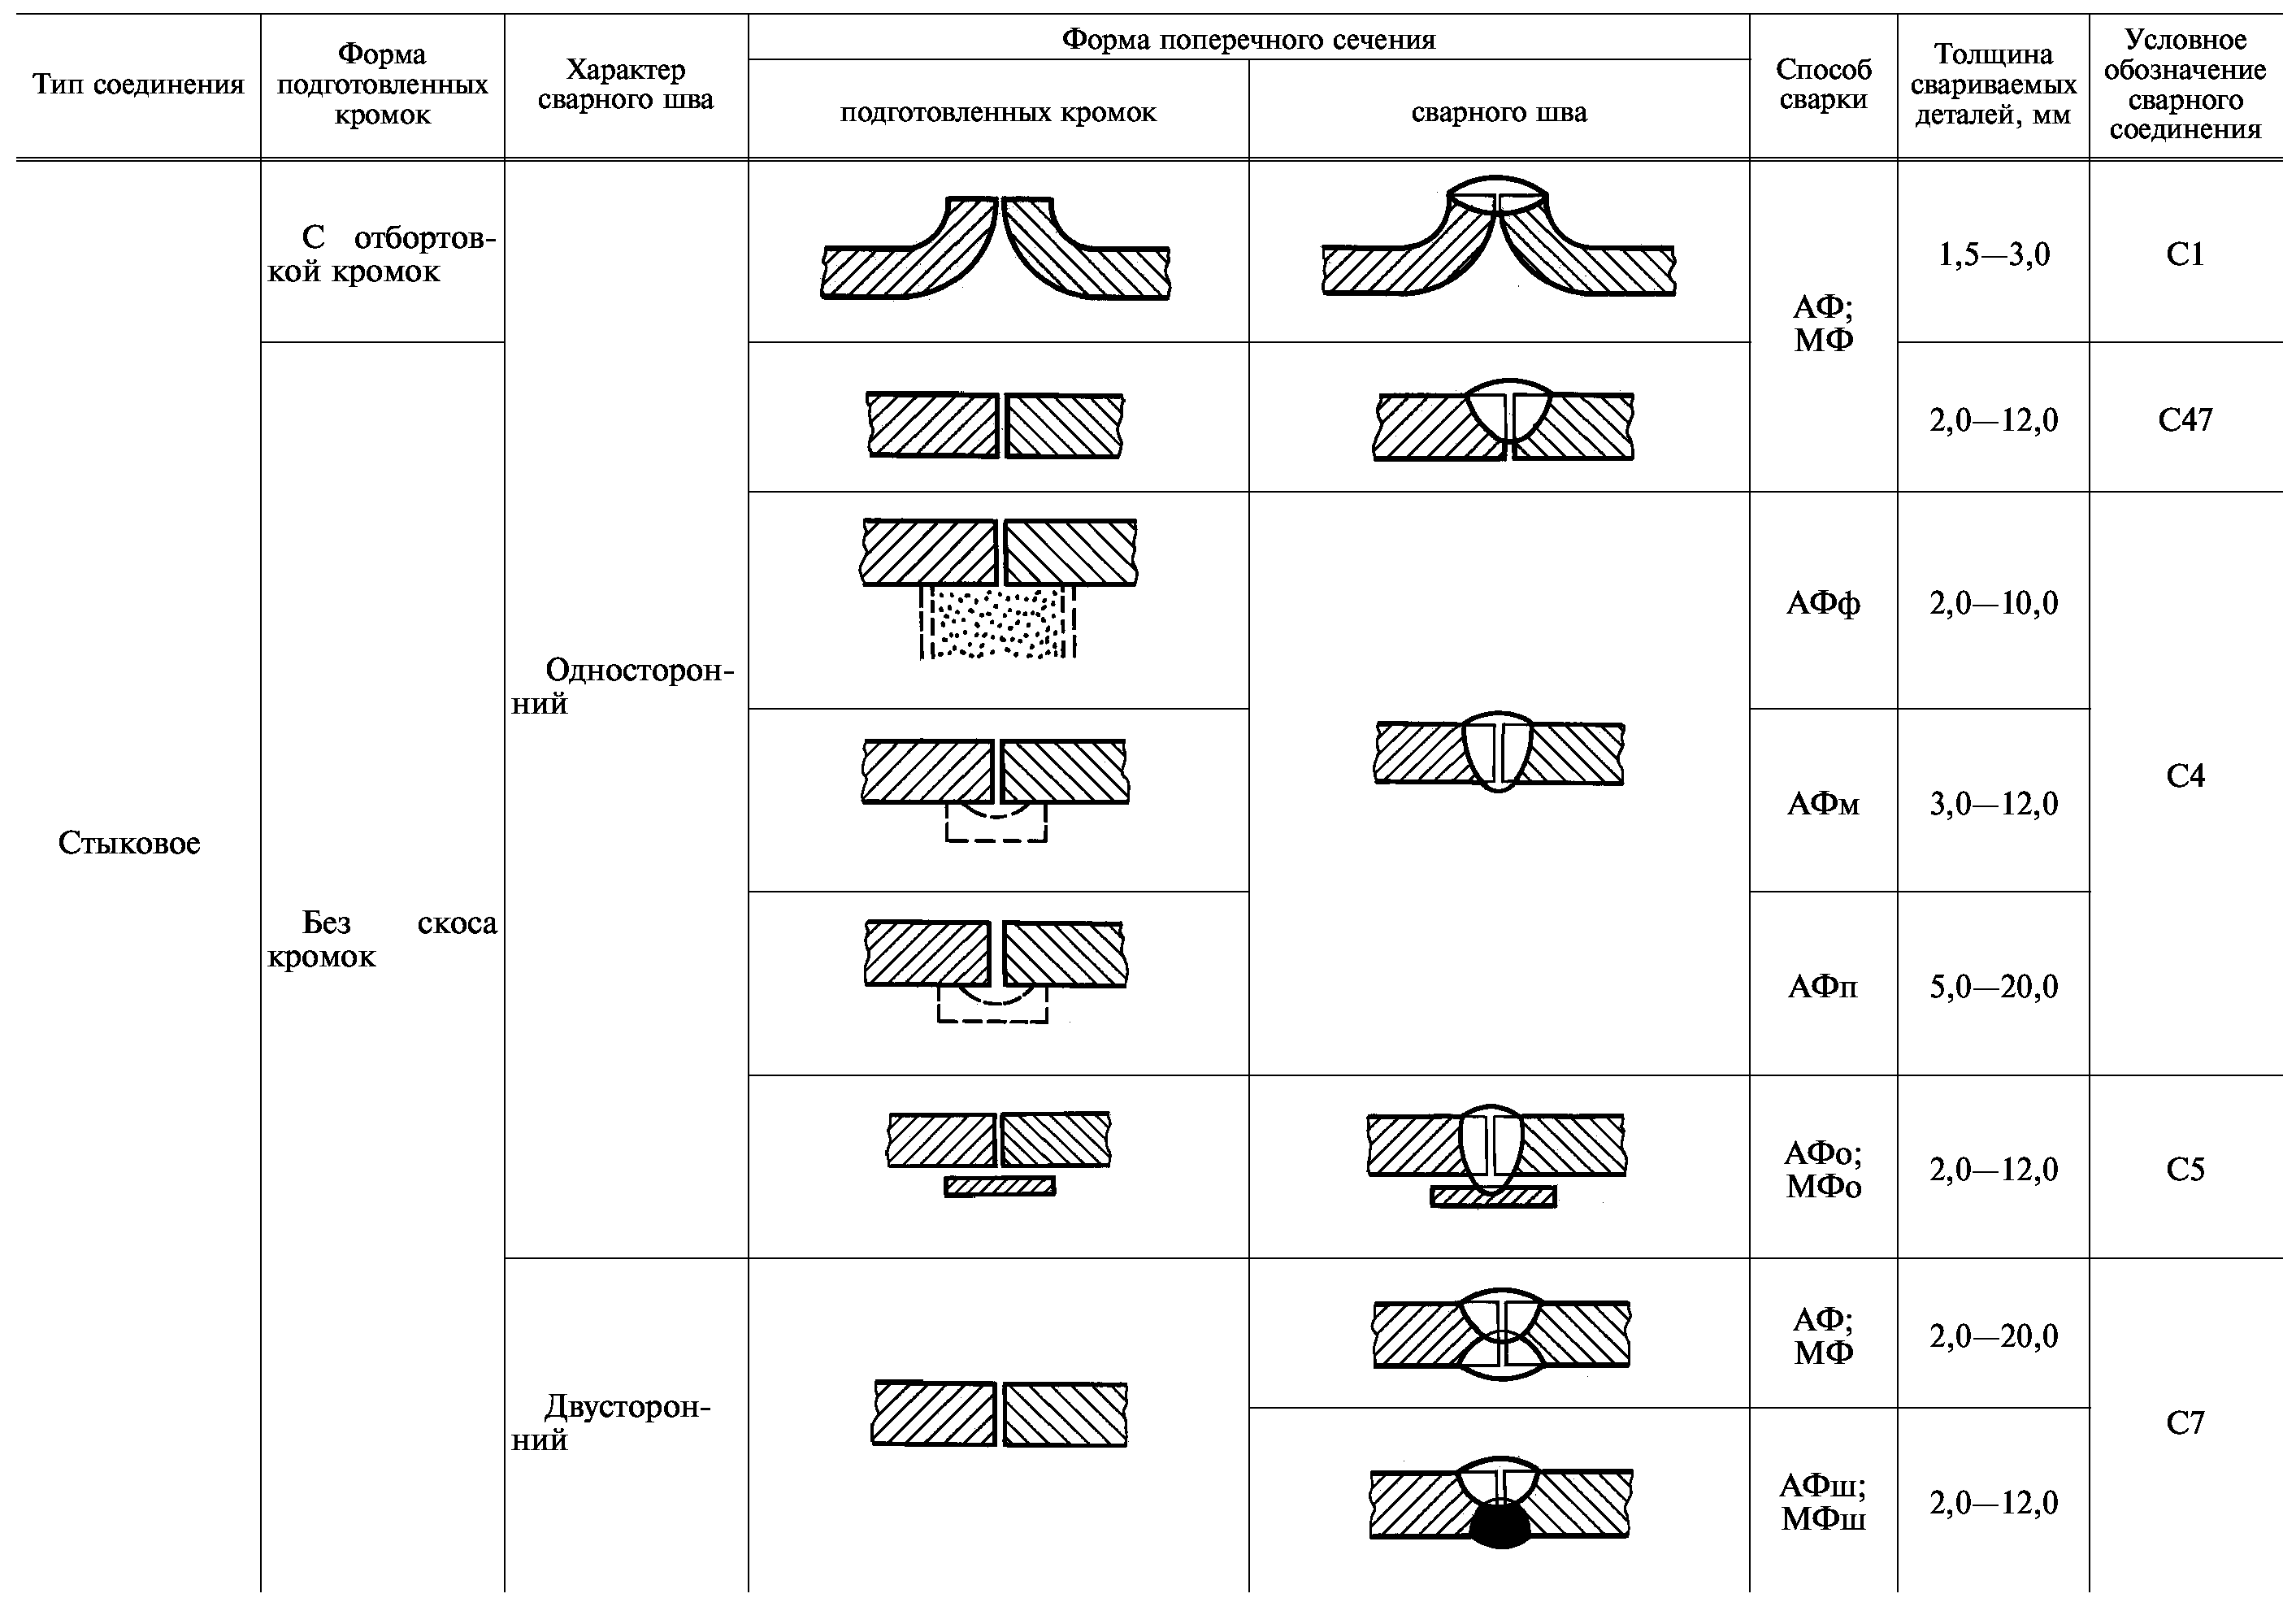 Сварное соединение пример. Сварка под флюсом ГОСТ 8713-79. Тип сварного соединения у1. Сварные соединения Тип 1 и Тип 2 что это. Тип соединения сварных швов у4.